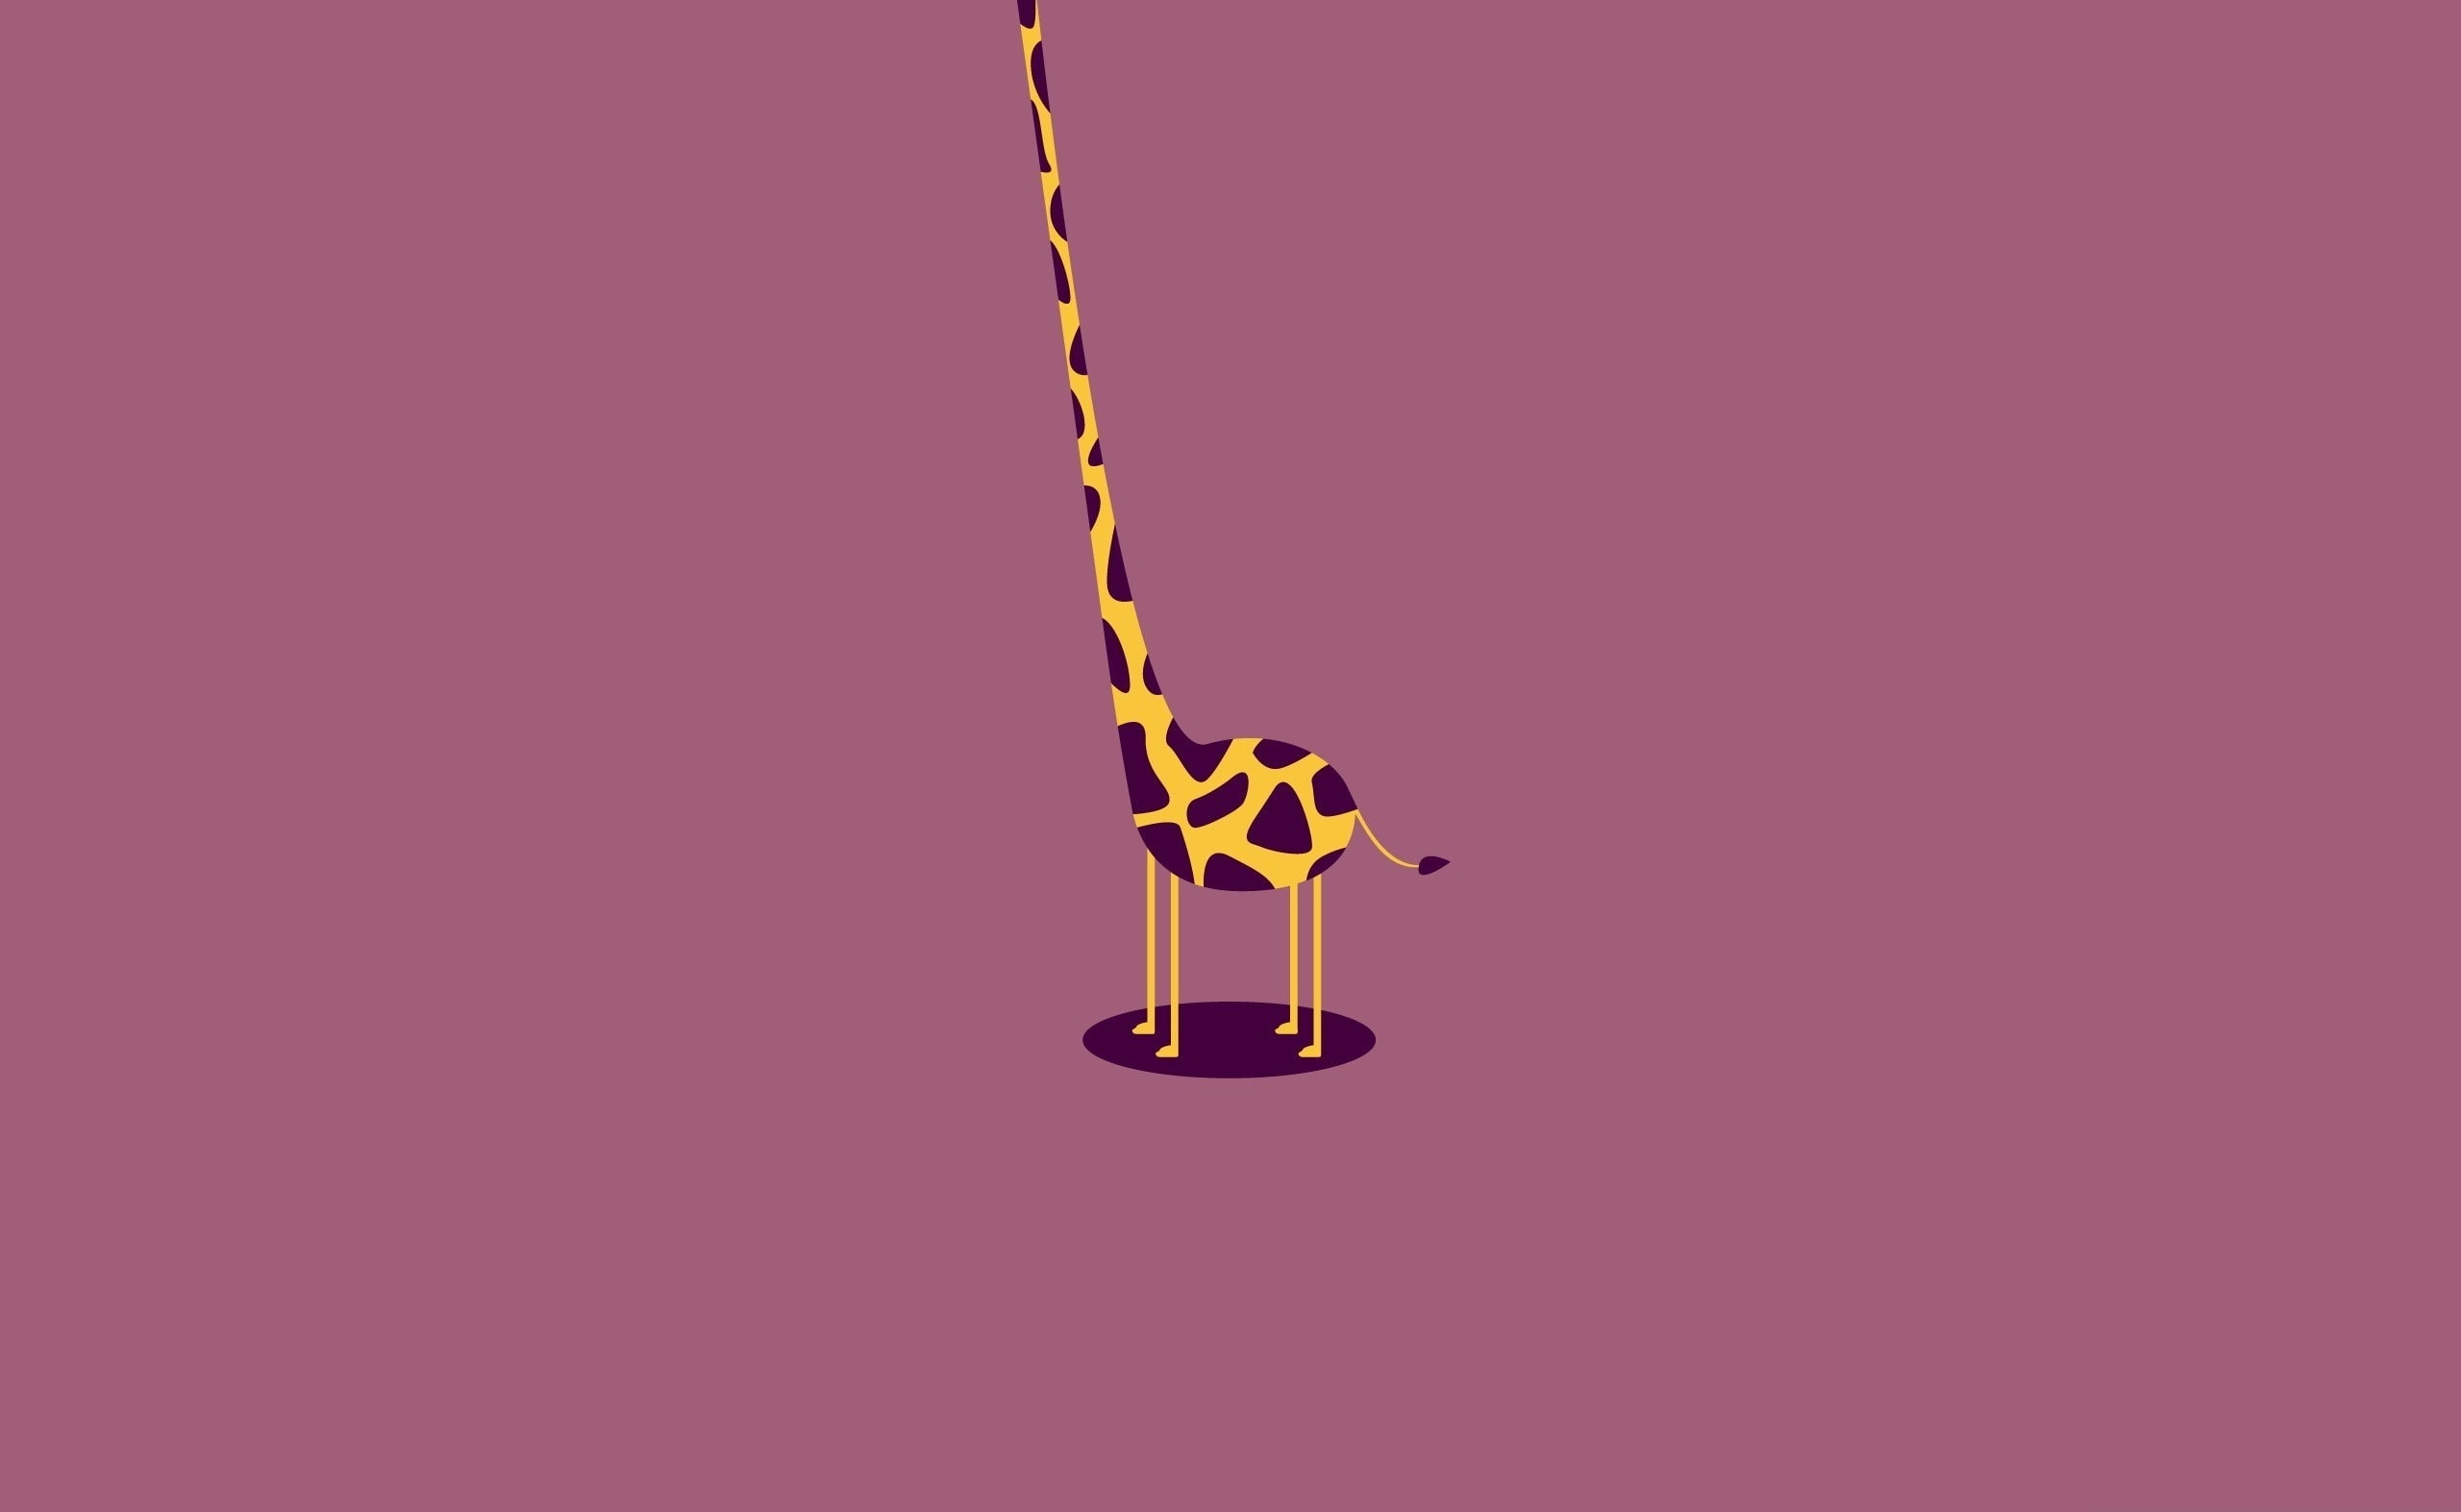 Free download | HD wallpaper: Giraffe Vector Art, giraffe illustration ...